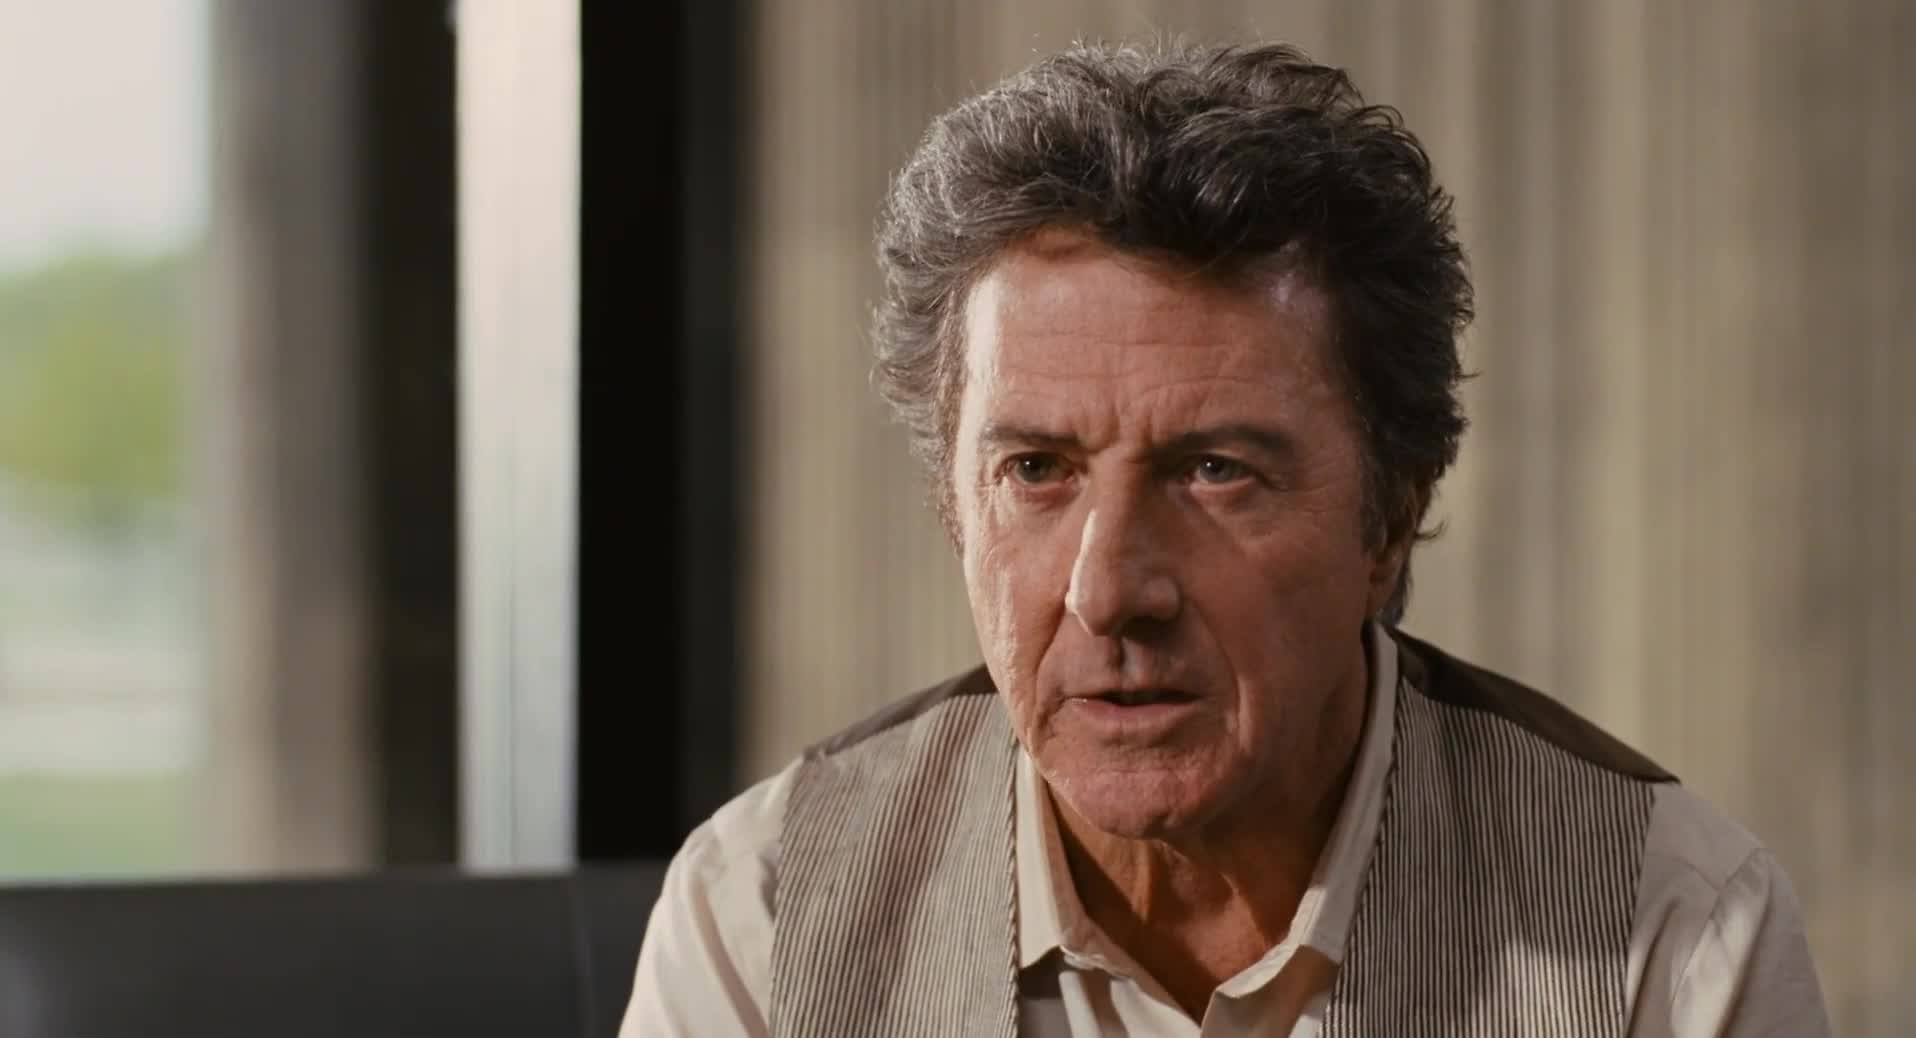 Pszichiátriai intézetben dolgozott, a külseje miatt nem jósoltak neki nagy jövőt – Dustin Hoffman 86 éves